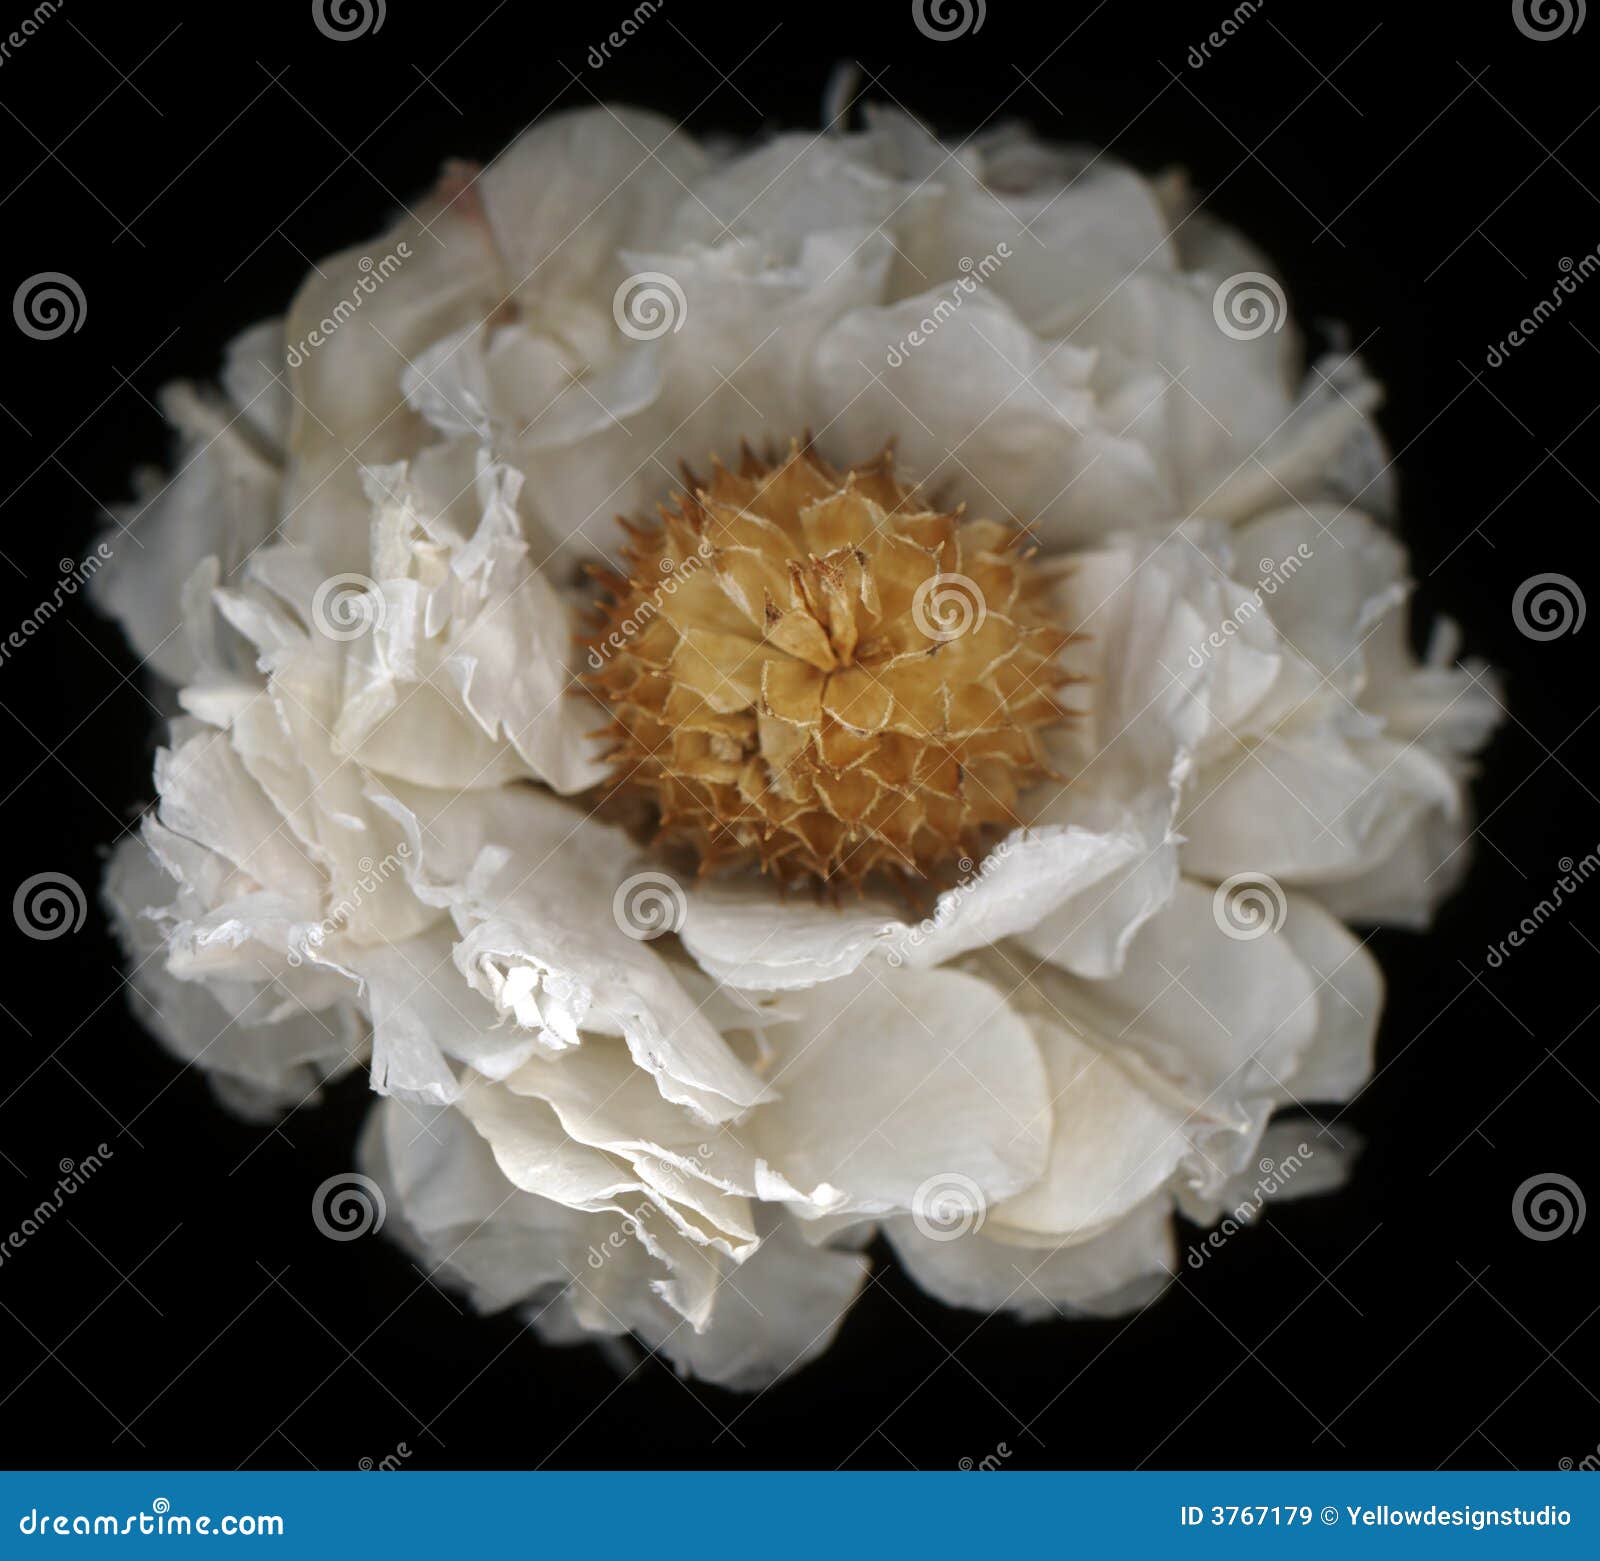 Flor branca com detalhe incrível, profundidade de campo rasa e beleza do assombro. 1 de 7 na série.